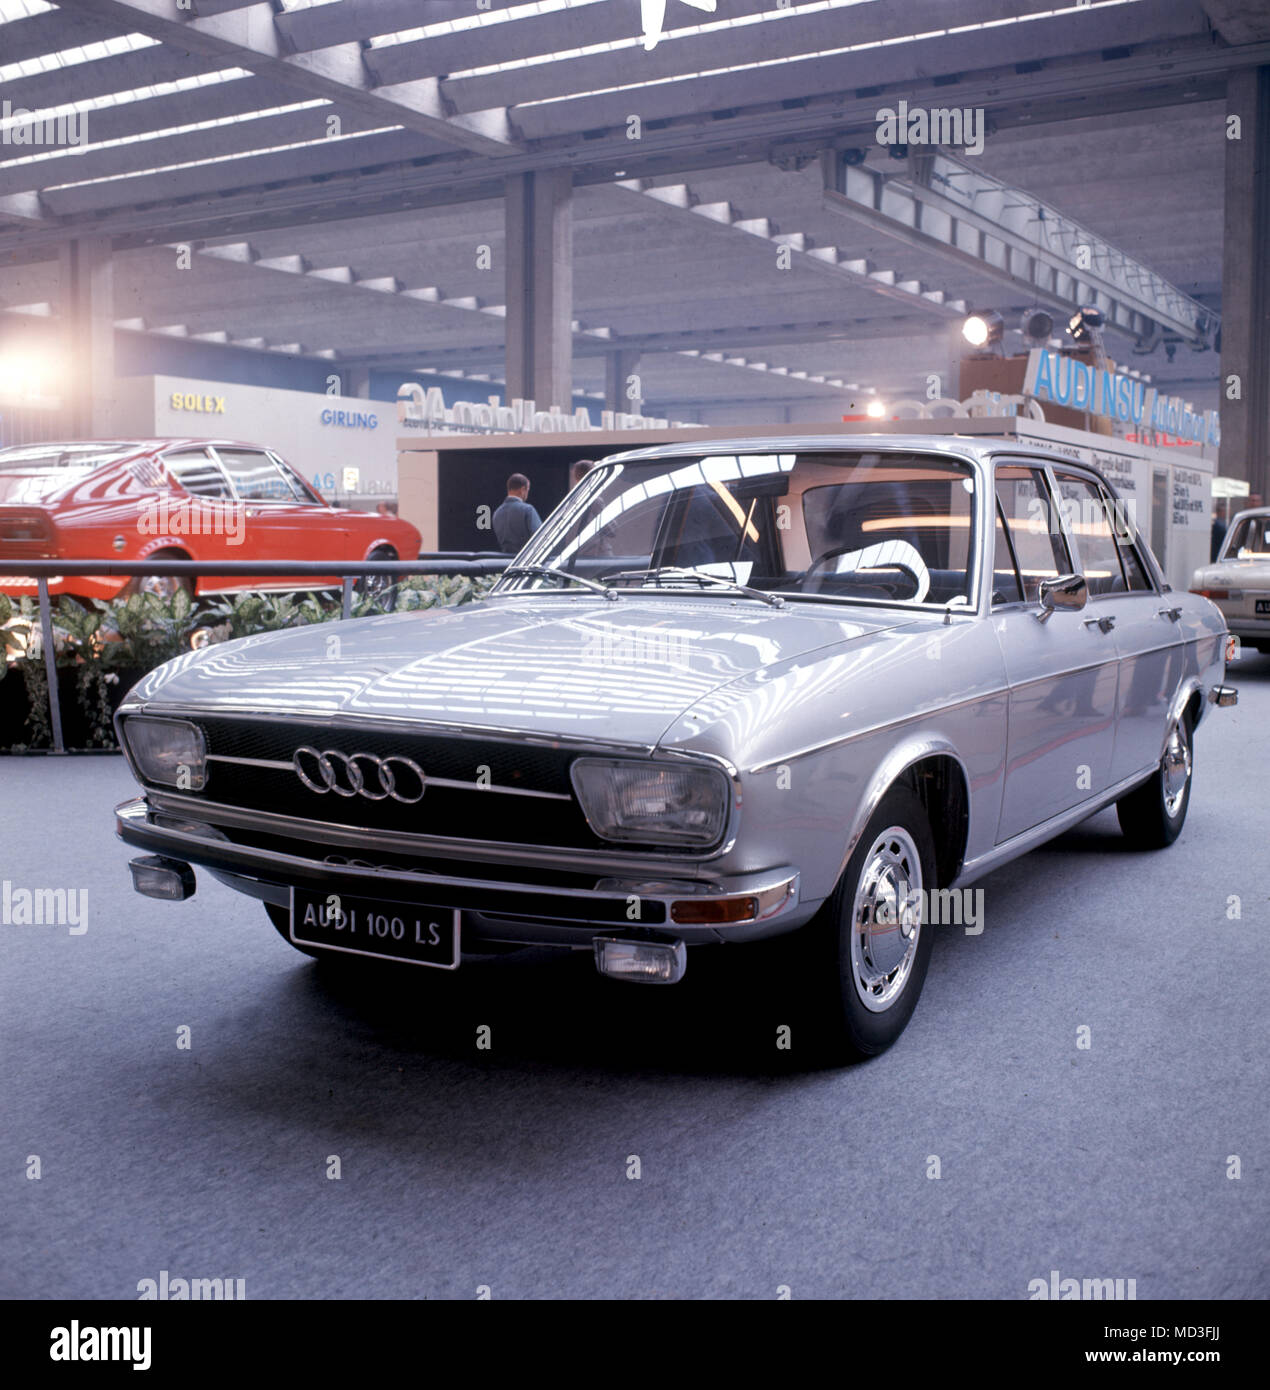 Einen Wagen vom Typ Audi 100 LS, auf der Internationalen Automobilausstellung in Frankfurt am Main im Jahr 1969. Foto: Willi Gutberlet +++(c) dpa - Report+++ | Verwendung weltweit Stockfoto